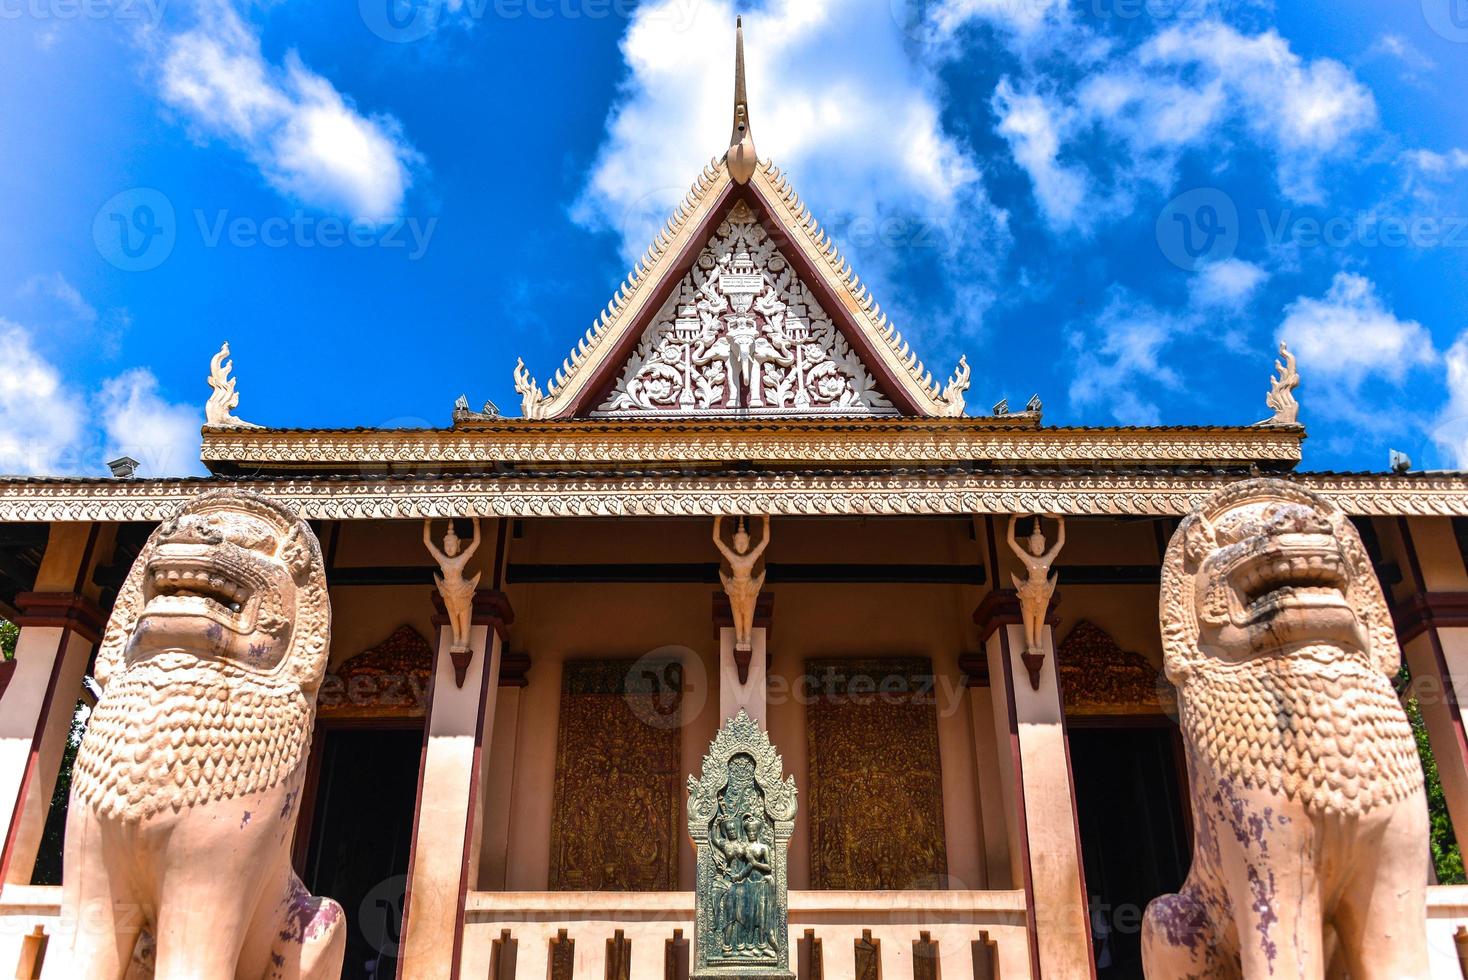 wat phnom é um templo budista localizado em phnom penh, camboja. é a estrutura religiosa mais alta da cidade. foto